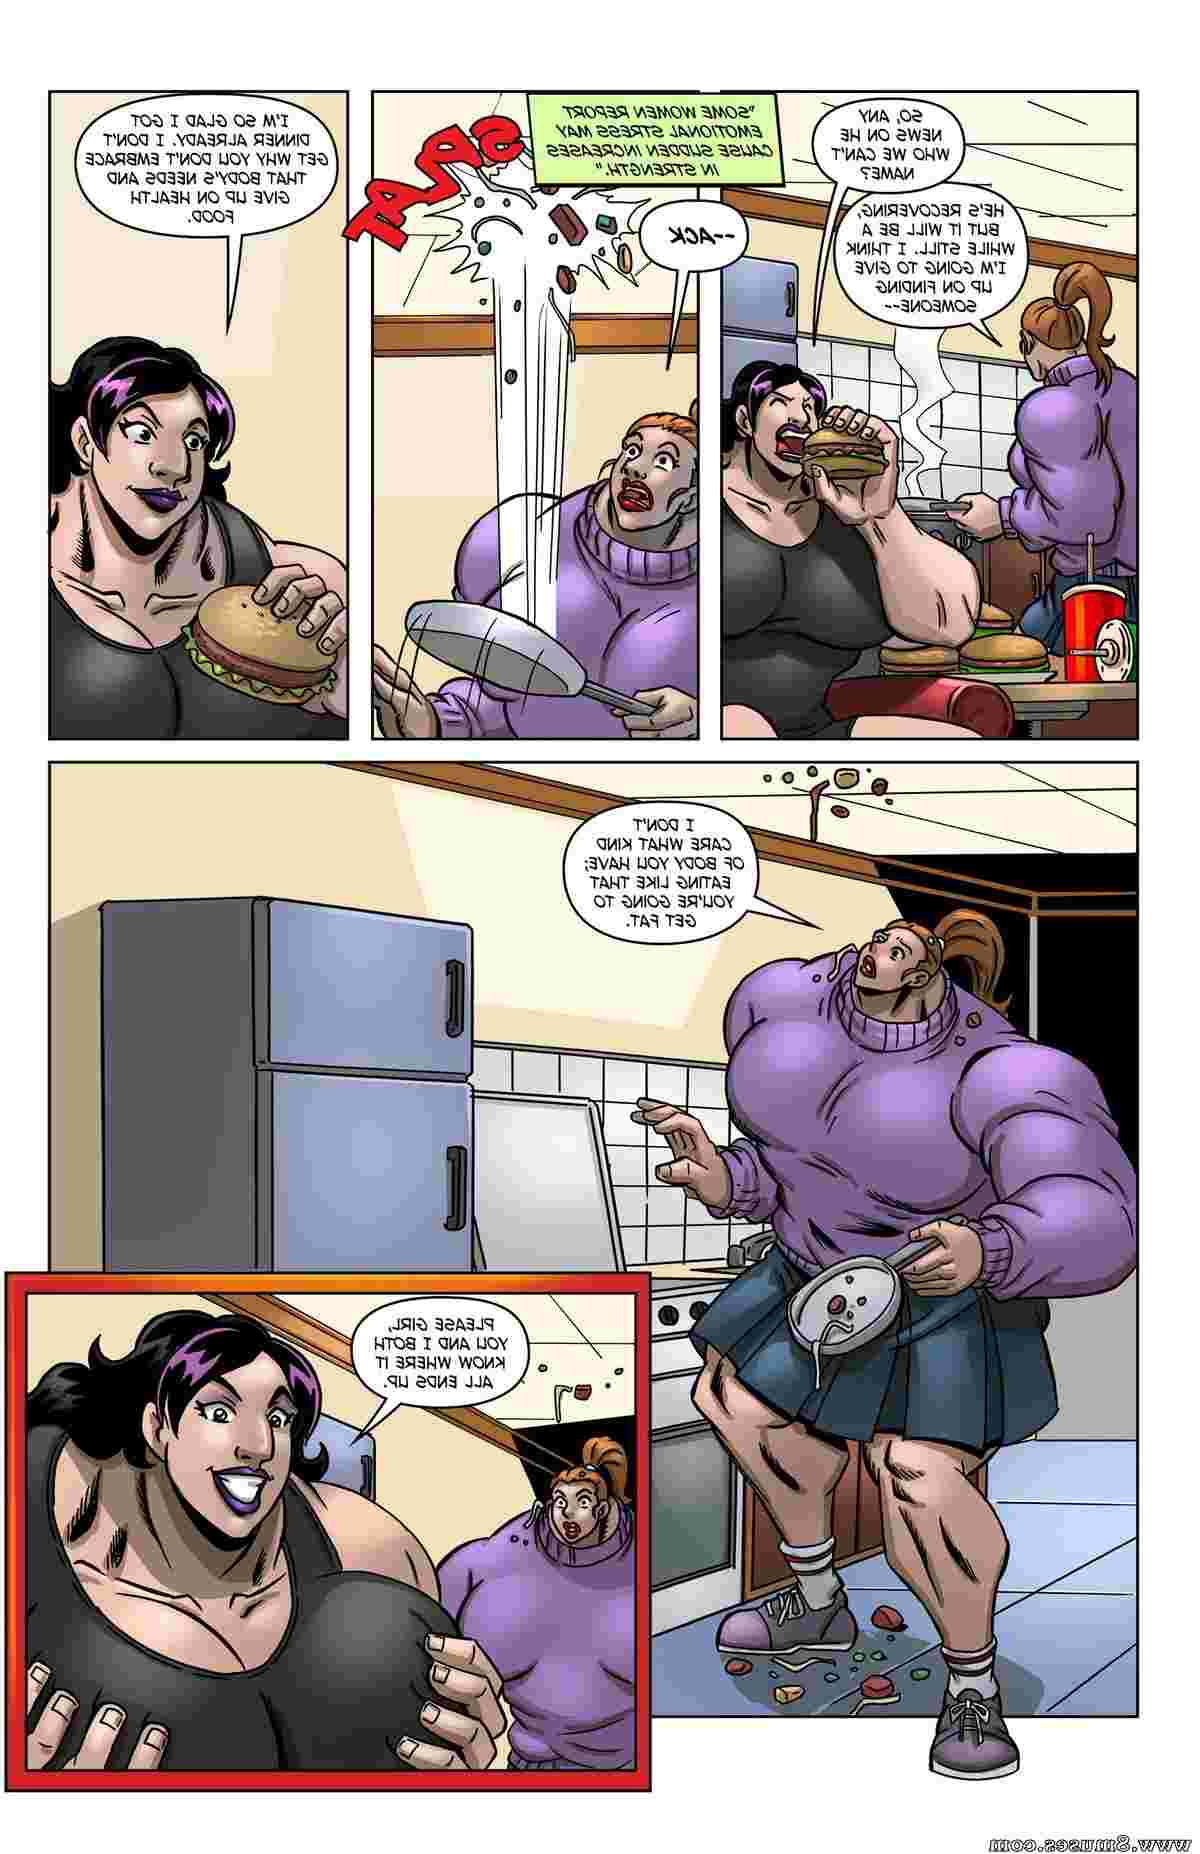 MuscleFan-Comics/Big-Life Big_Life__8muses_-_Sex_and_Porn_Comics_10.jpg